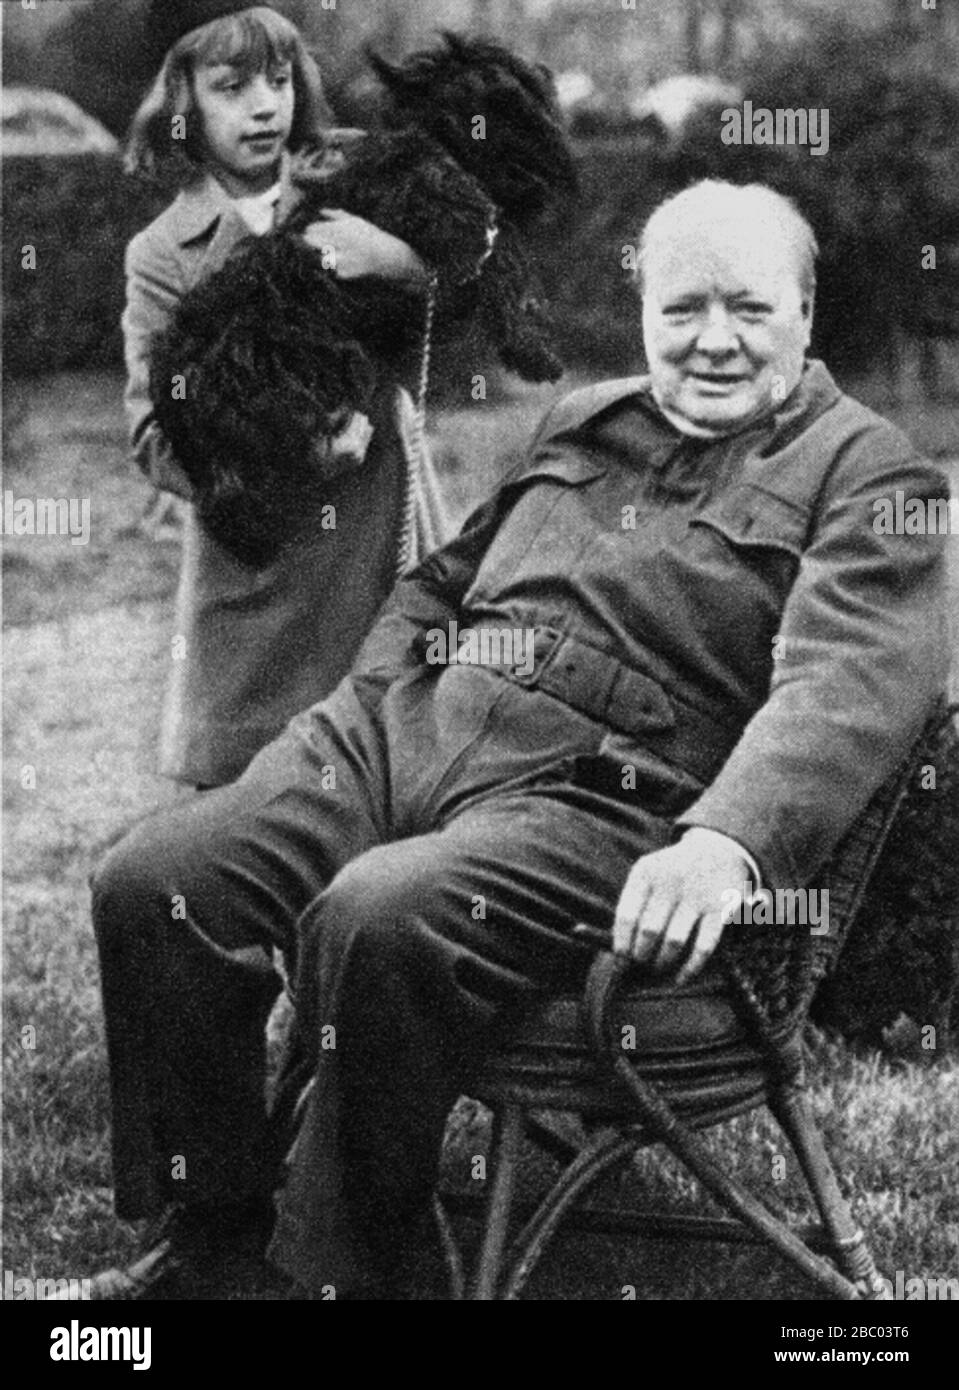 Churchill con Diana Hopkins, hija de Harry Hopkins, asesora de Roosevelt en política exterior. Con ellos el perro del Presidente, "Fala". Diciembre de 1941 Foto de stock